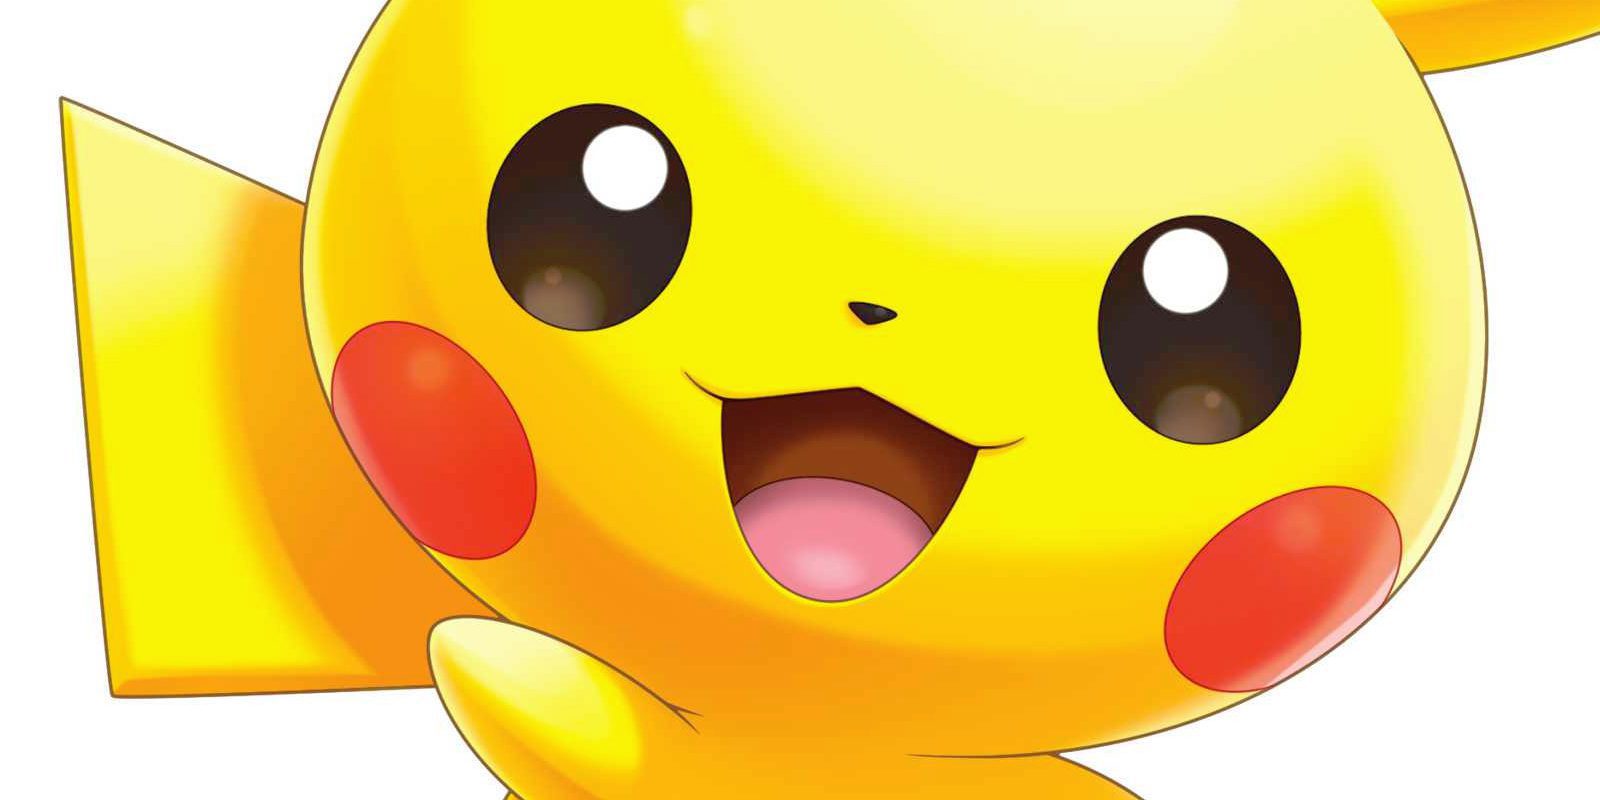 Anunciado 'PokéLand', otro juego de 'Pokémon' para móviles